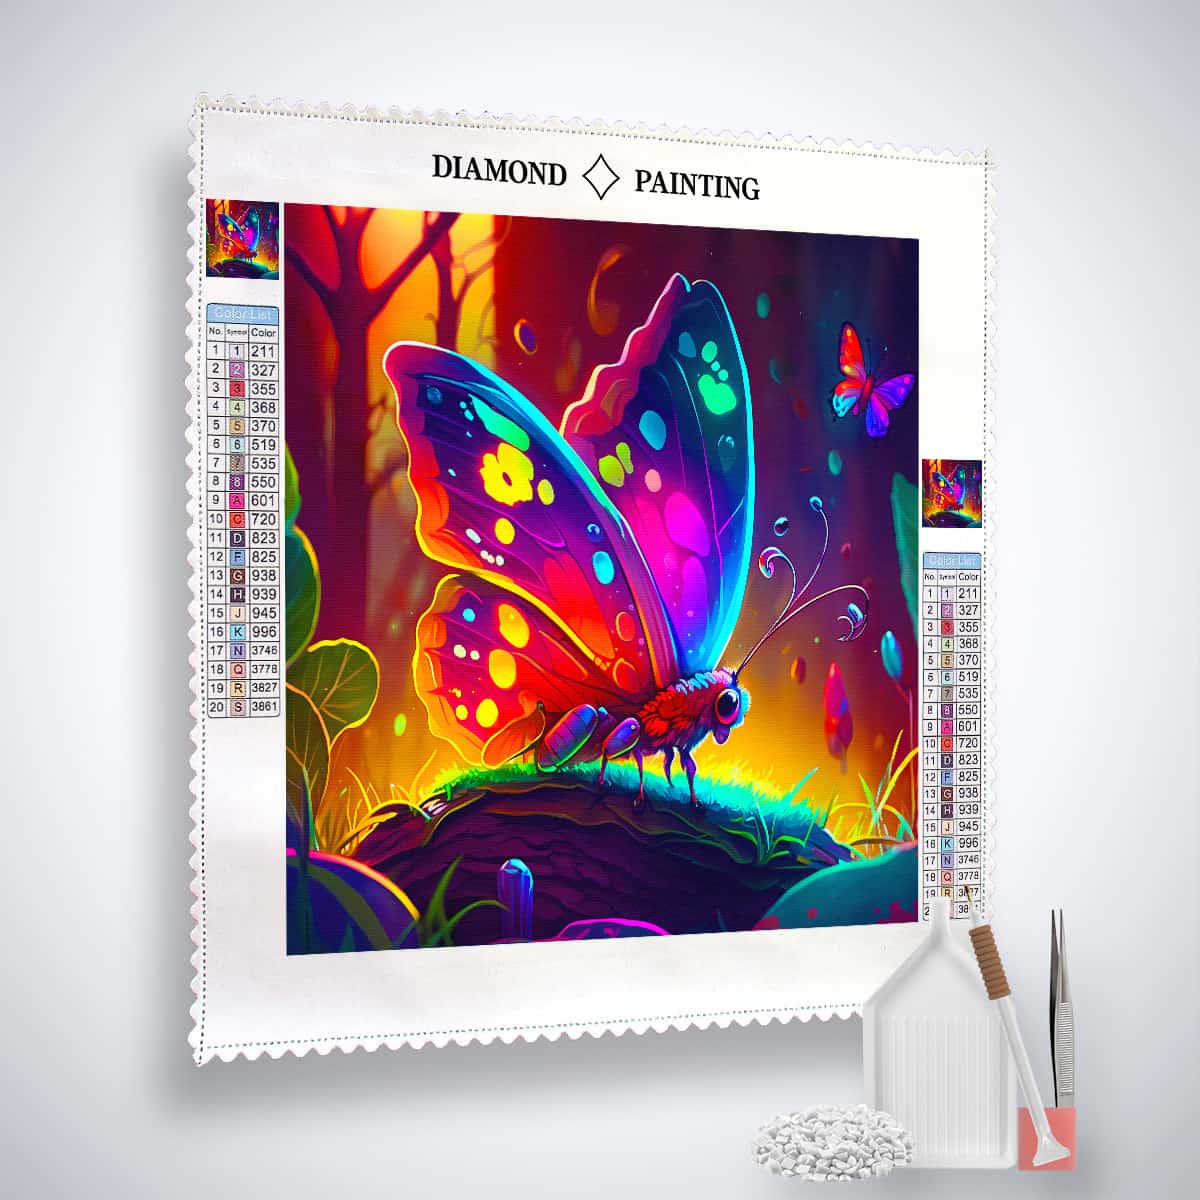 AB Diamond Painting - Neon Schmetterling im Zauberwald - gedruckt in Ultra-HD - AB Diamond, Fantasy, Neu eingetroffen, Quadratisch, Schmetterling, Tiere